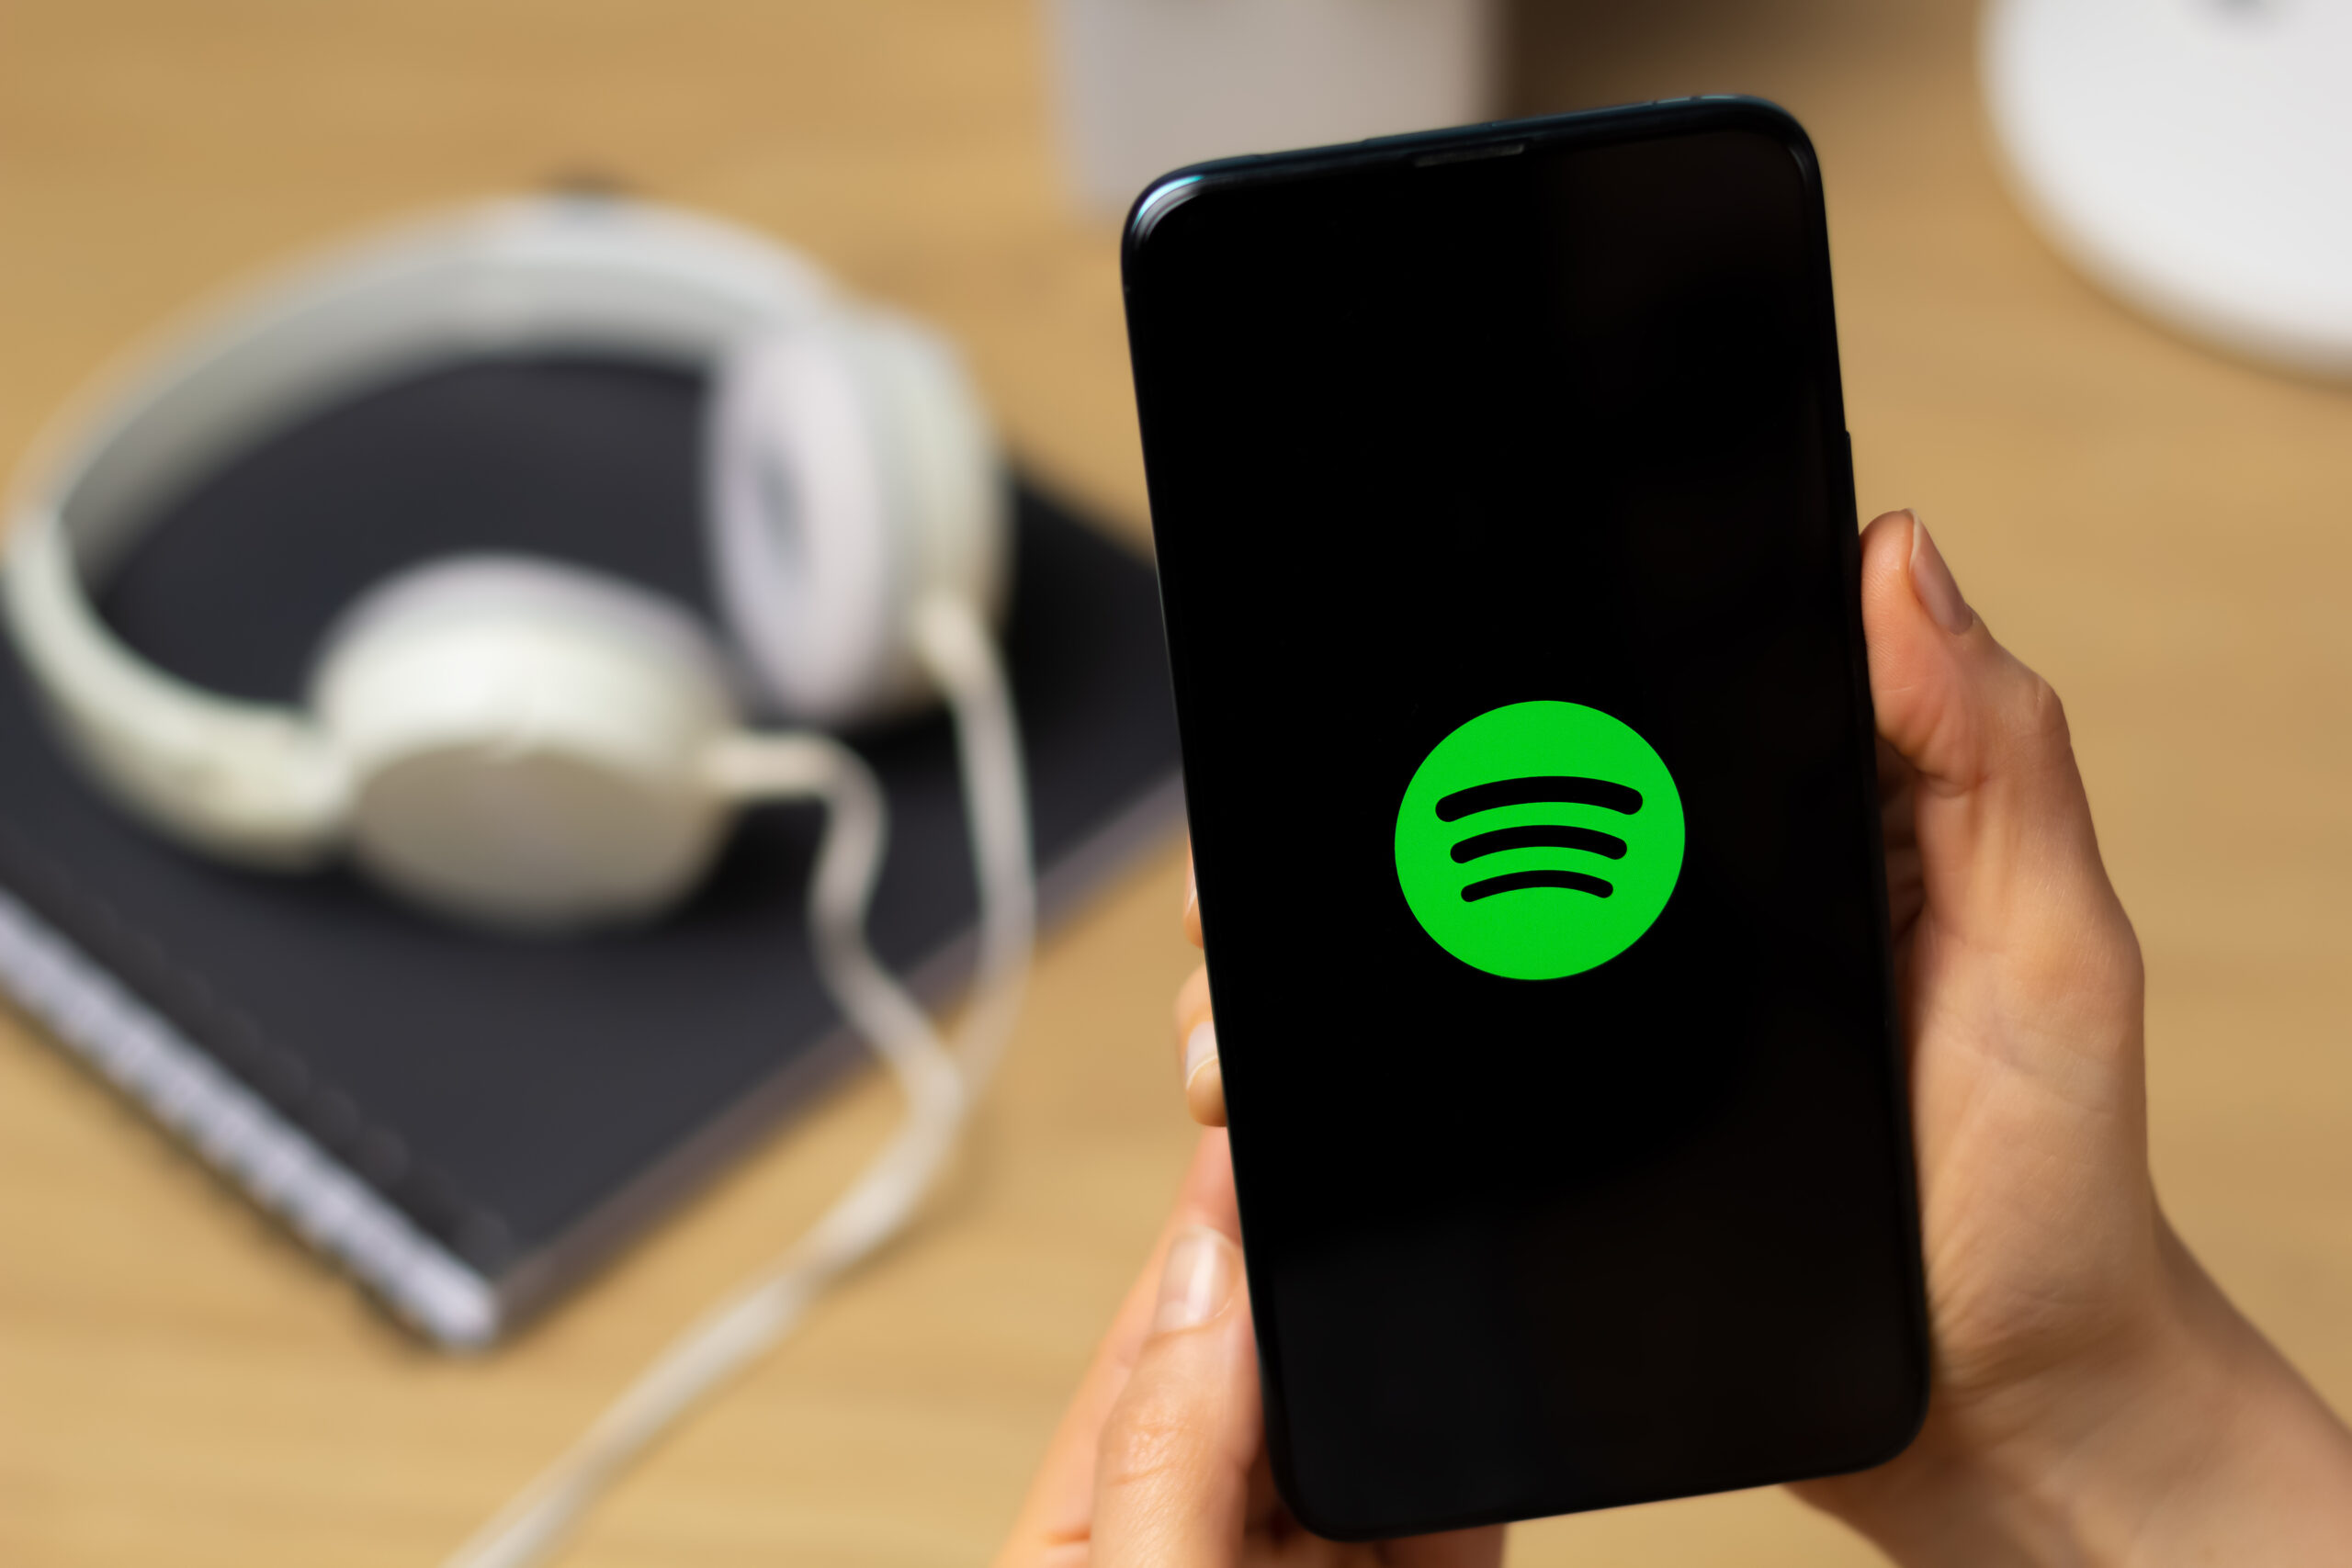 Aprenda a fazer sua Retrospectiva Spotify 2023 em segundos